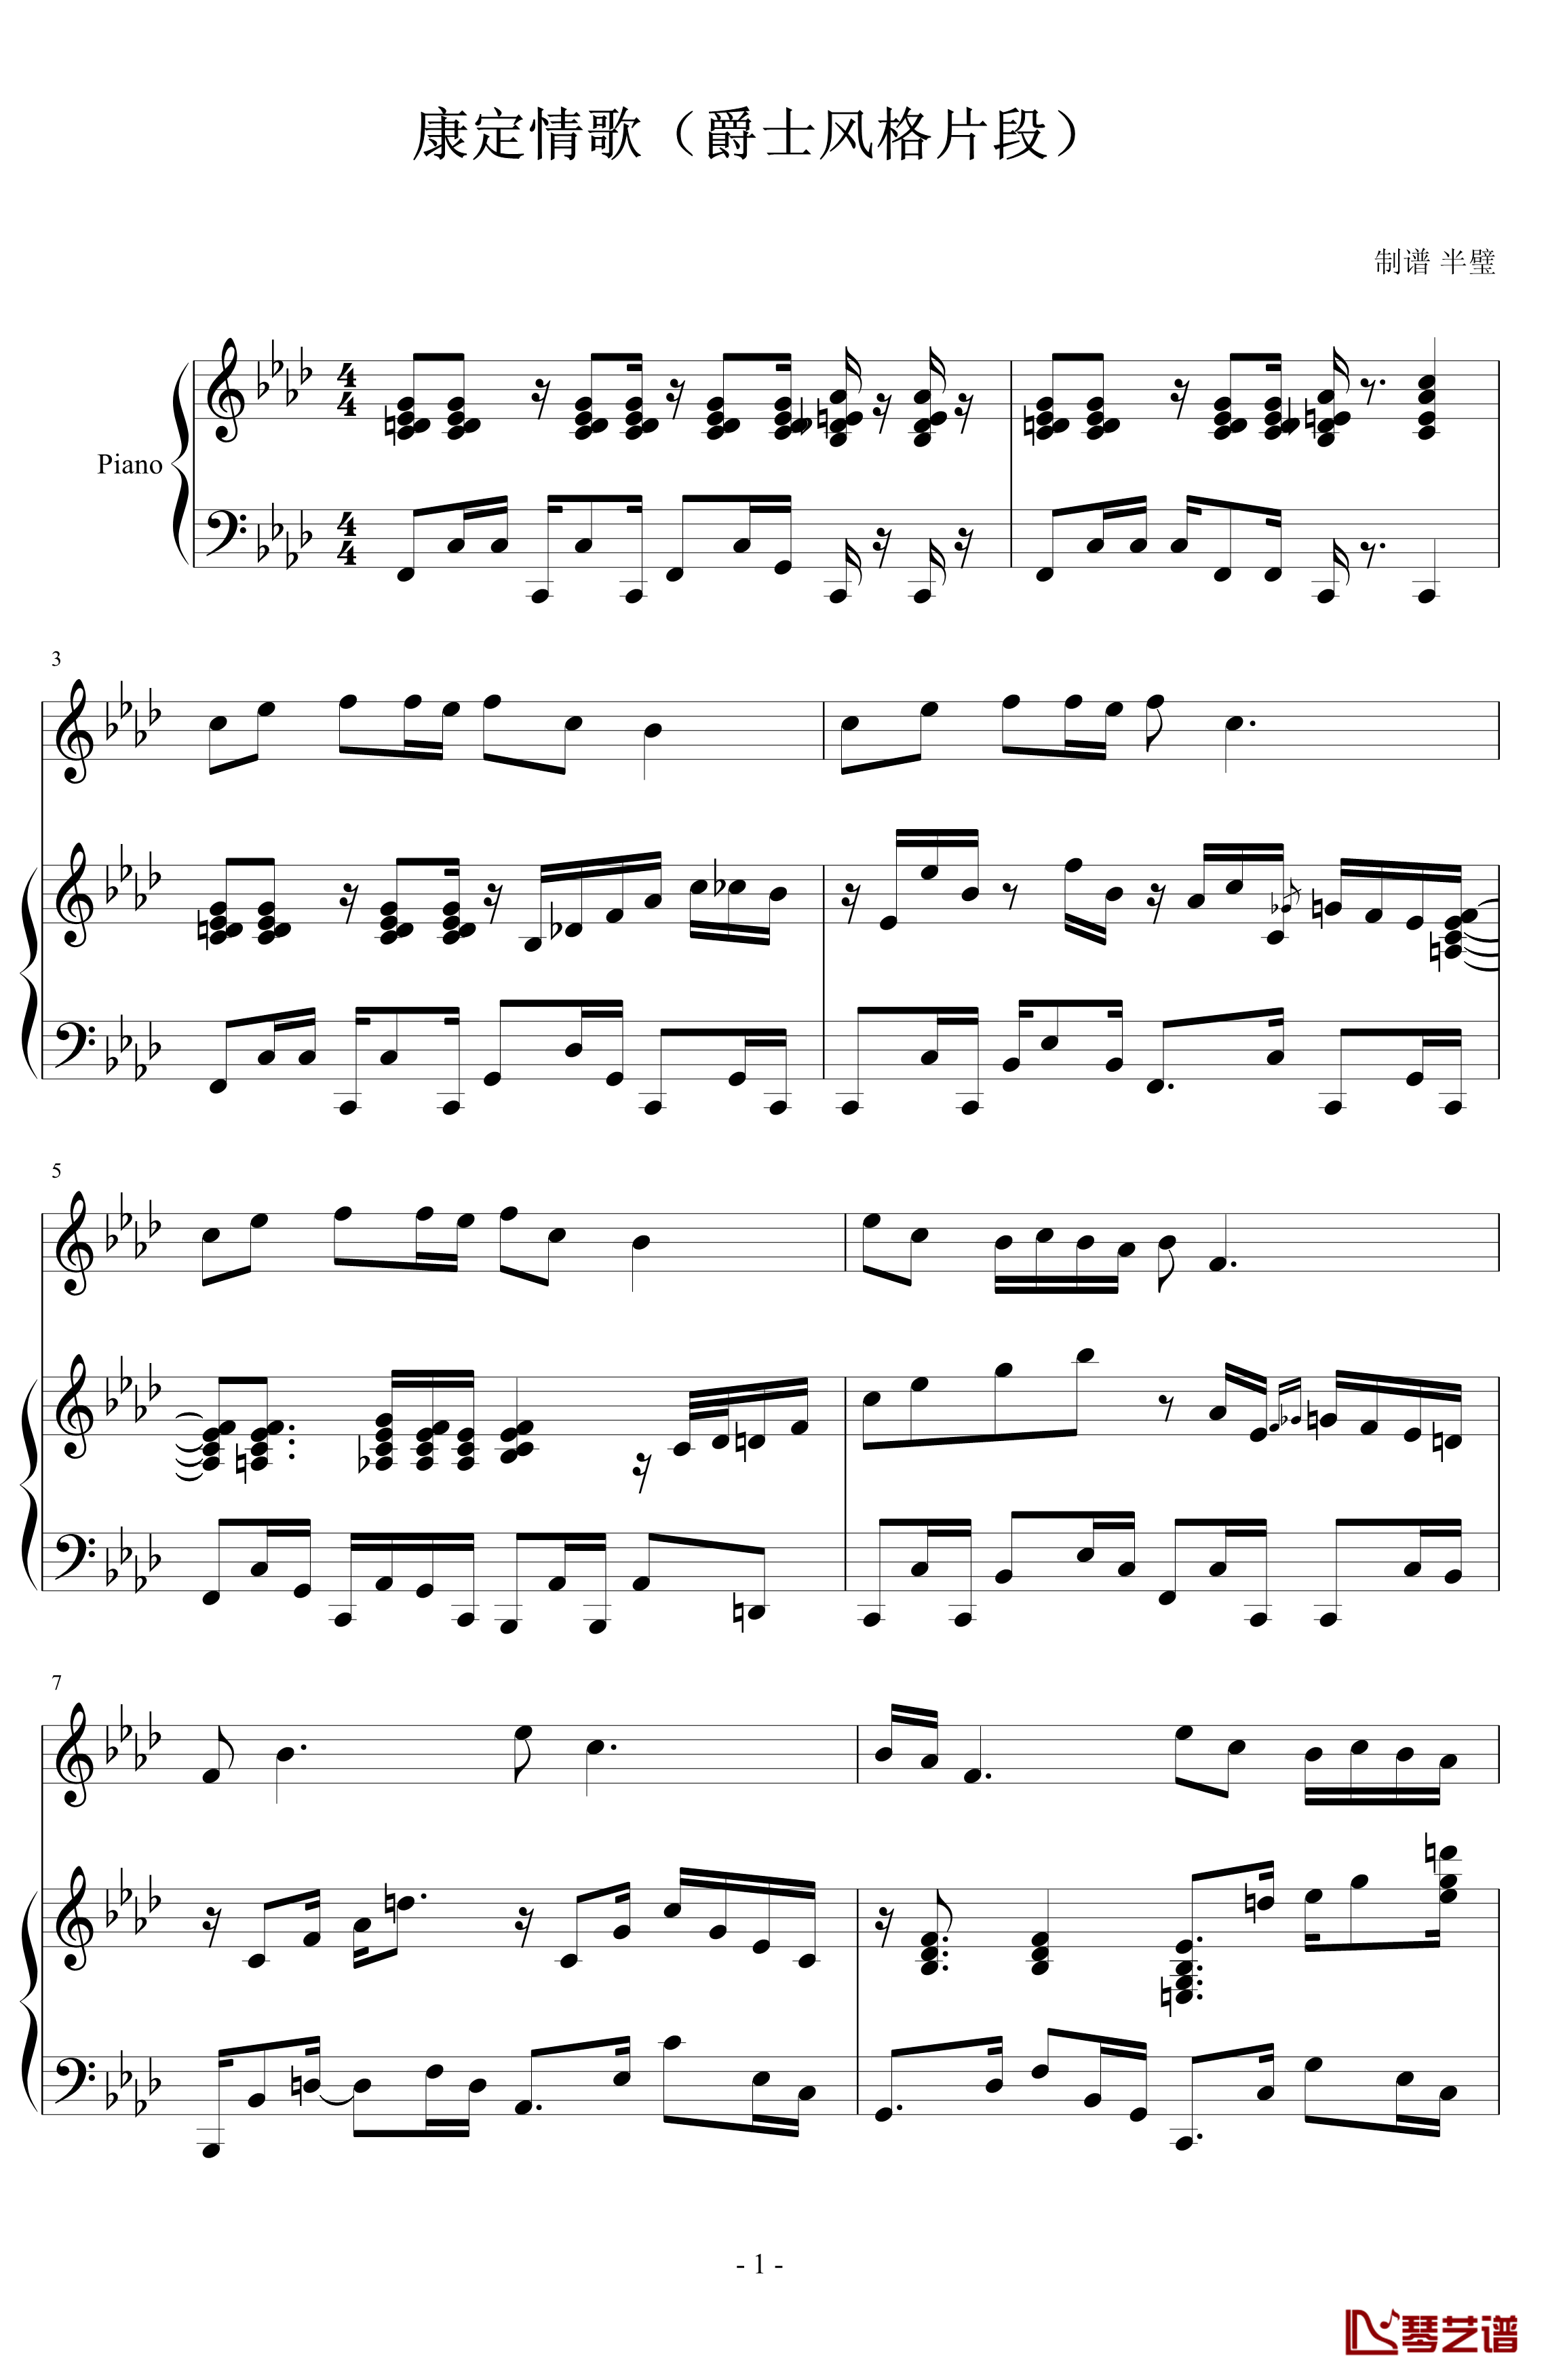 康定情歌钢琴谱-爵士版-中国名曲1